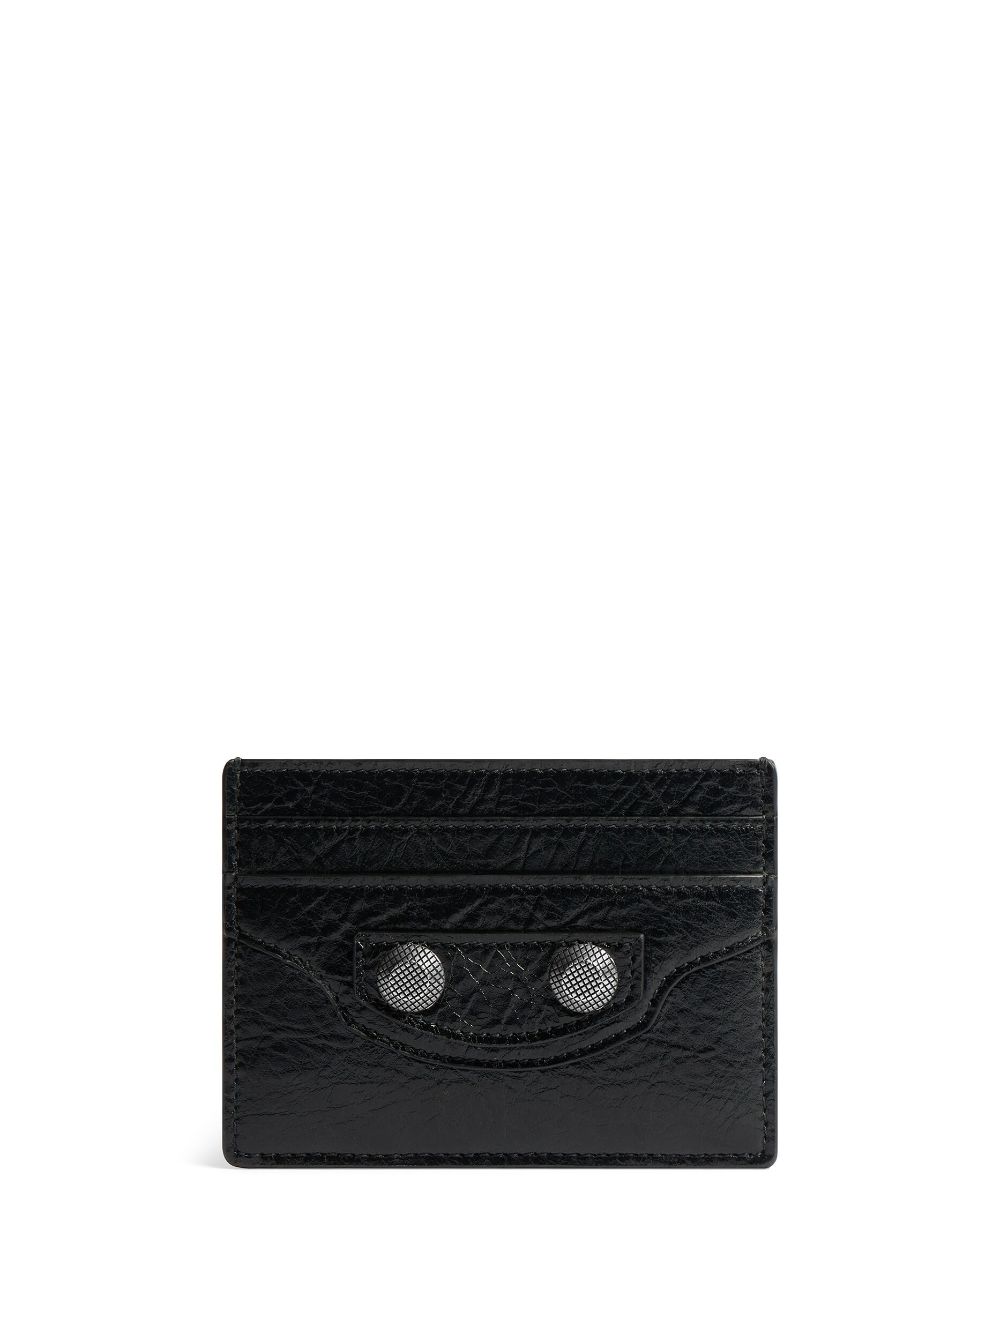 Saint Laurent Black Leather Card Holder Nd Donna Tu